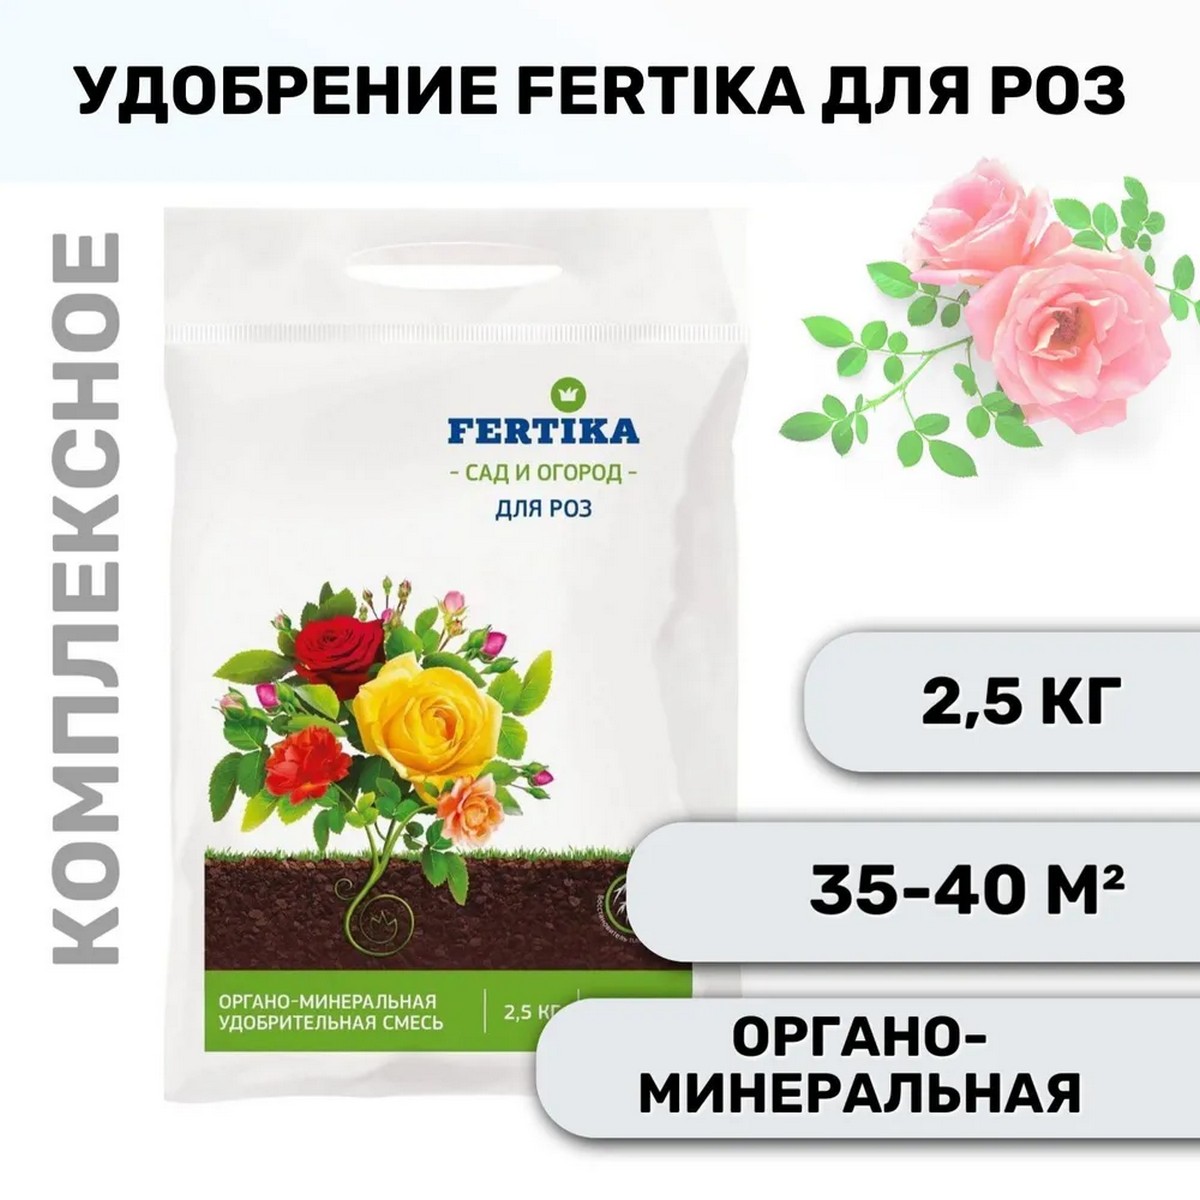 Удобрение FERTIKA Для роз 2.5 кг - фото 2